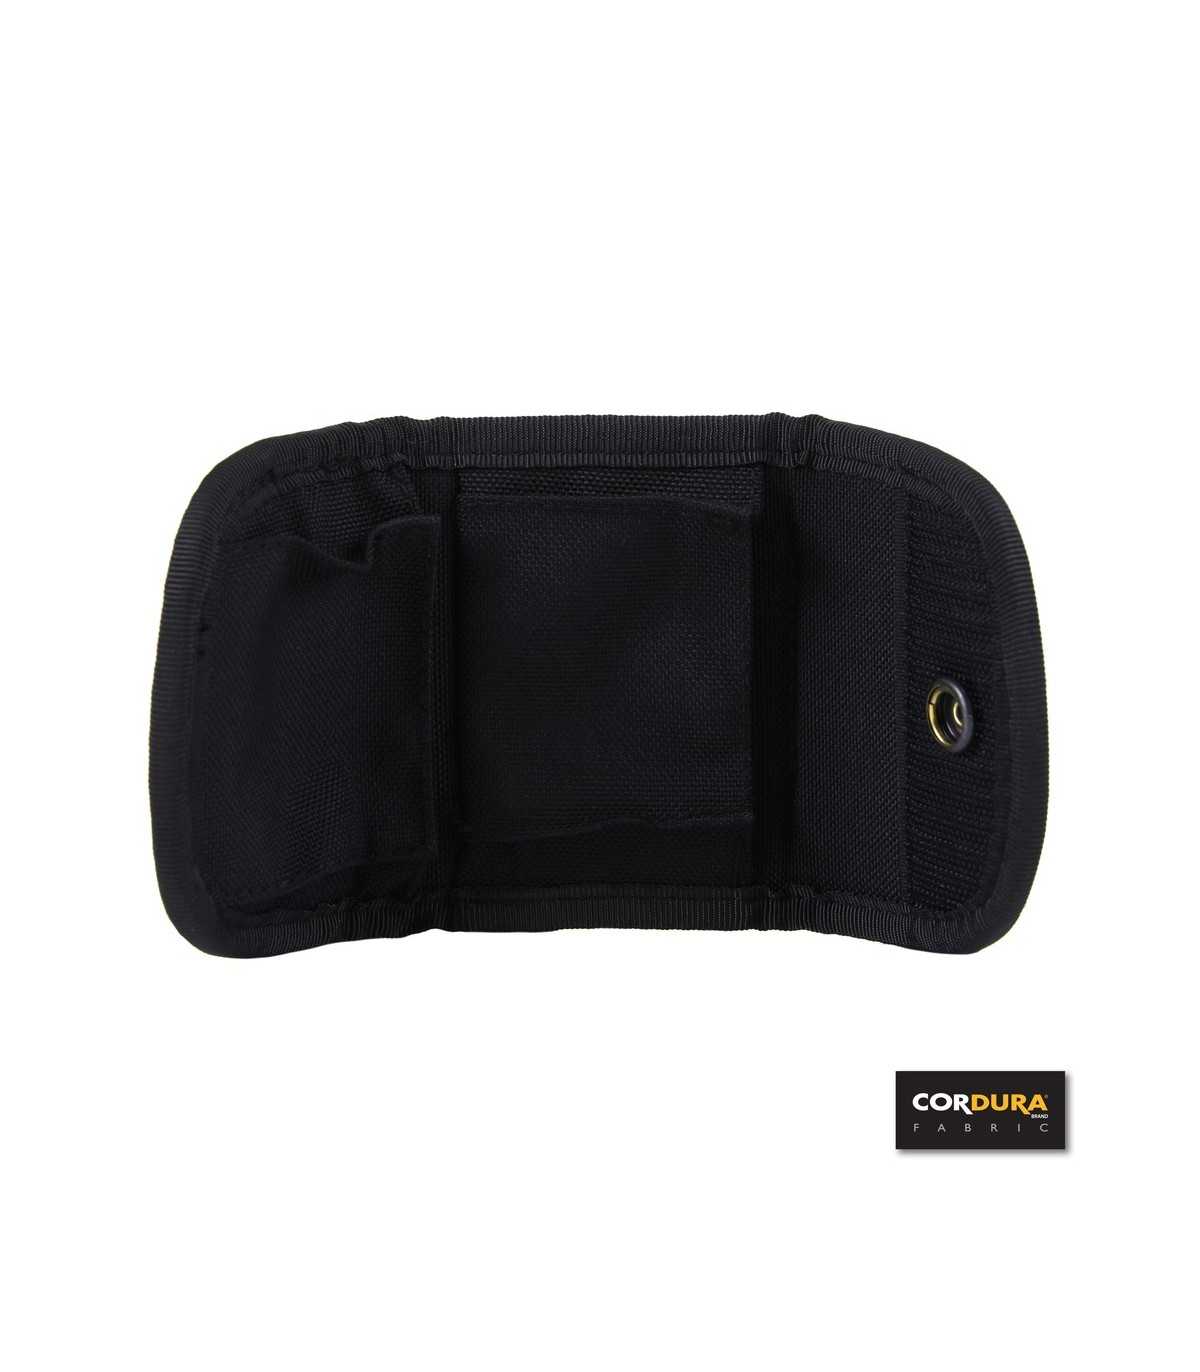 Tasca porta guanti in lattice in cordura da cinturone cintura Colore Nero